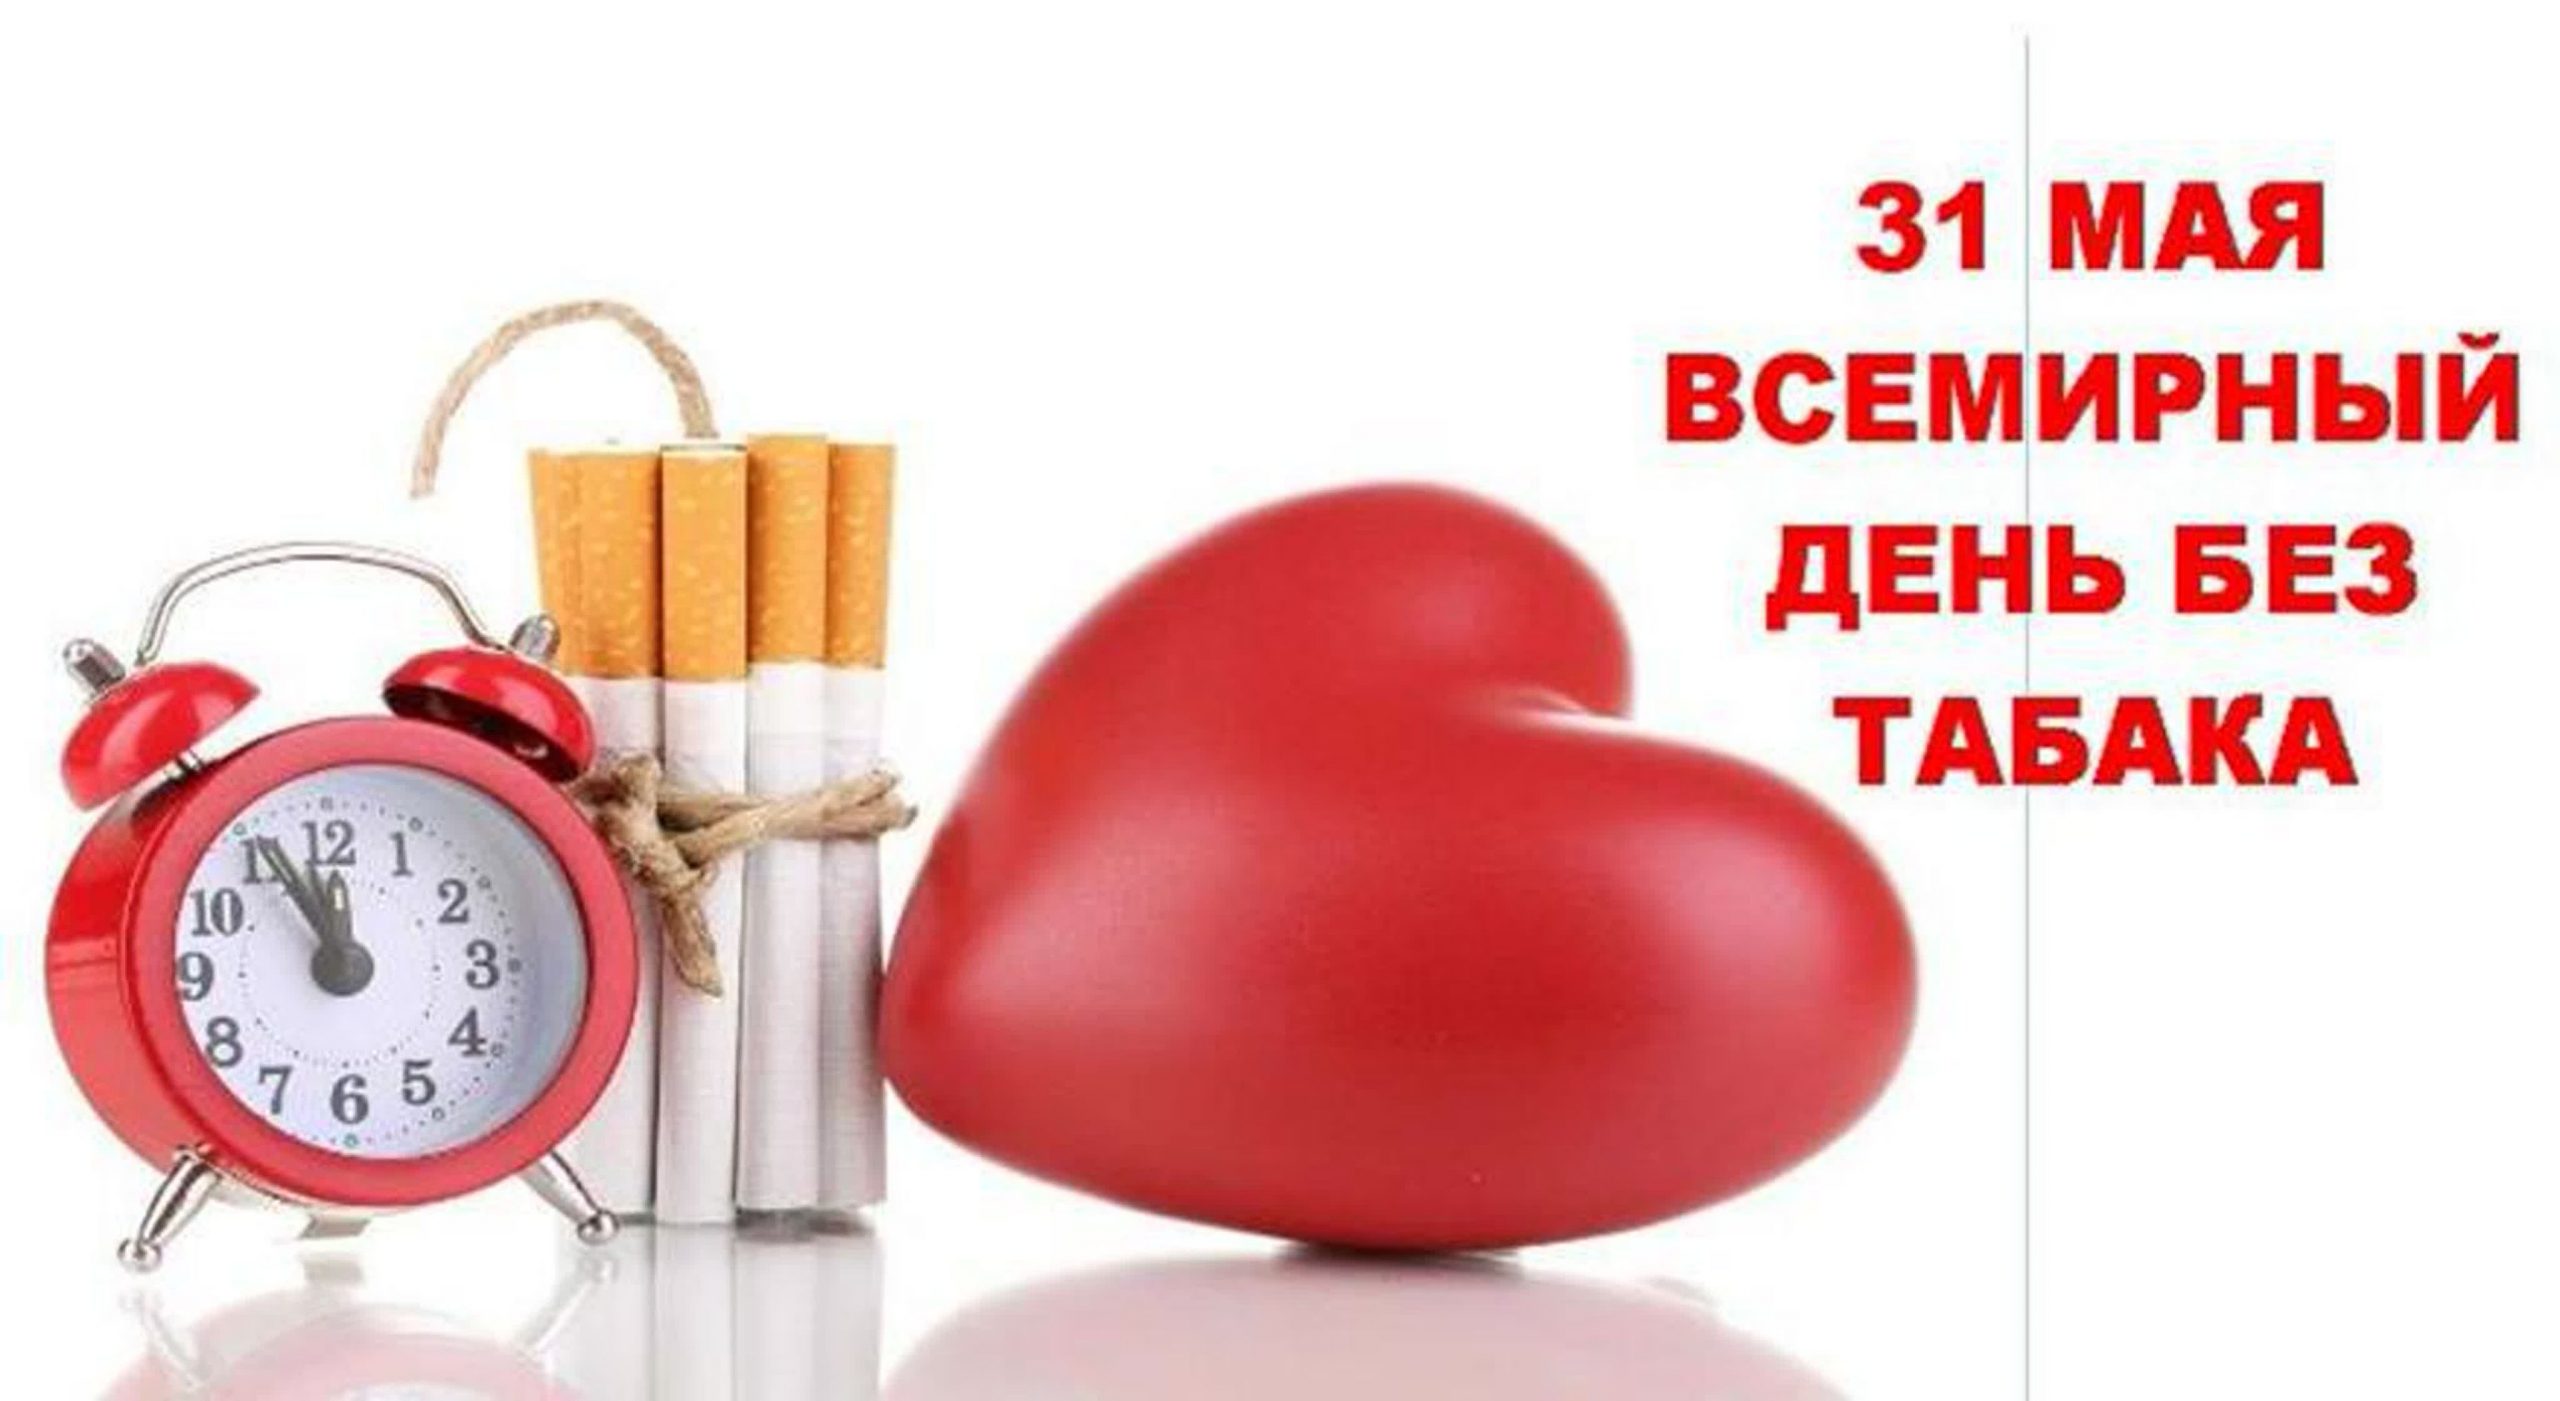 Нов 31 мая. Всемирный день без табака. 31 Мая Всемирный день без табака. Все мирныц ень без Табка. Всемирный день без Таба.